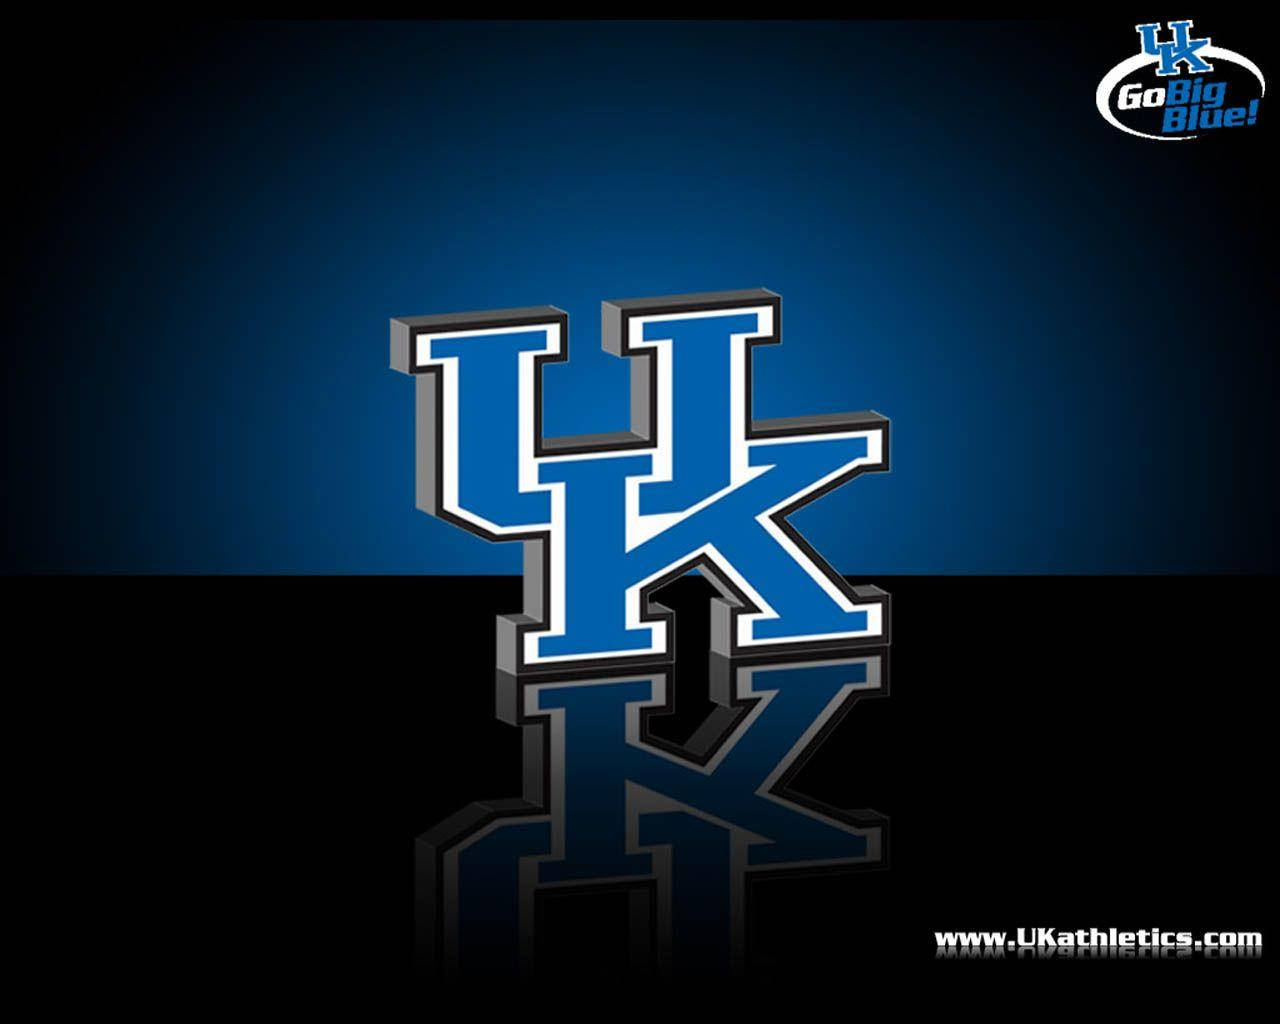 Logotipode Kentucky En 3d Fondo de pantalla